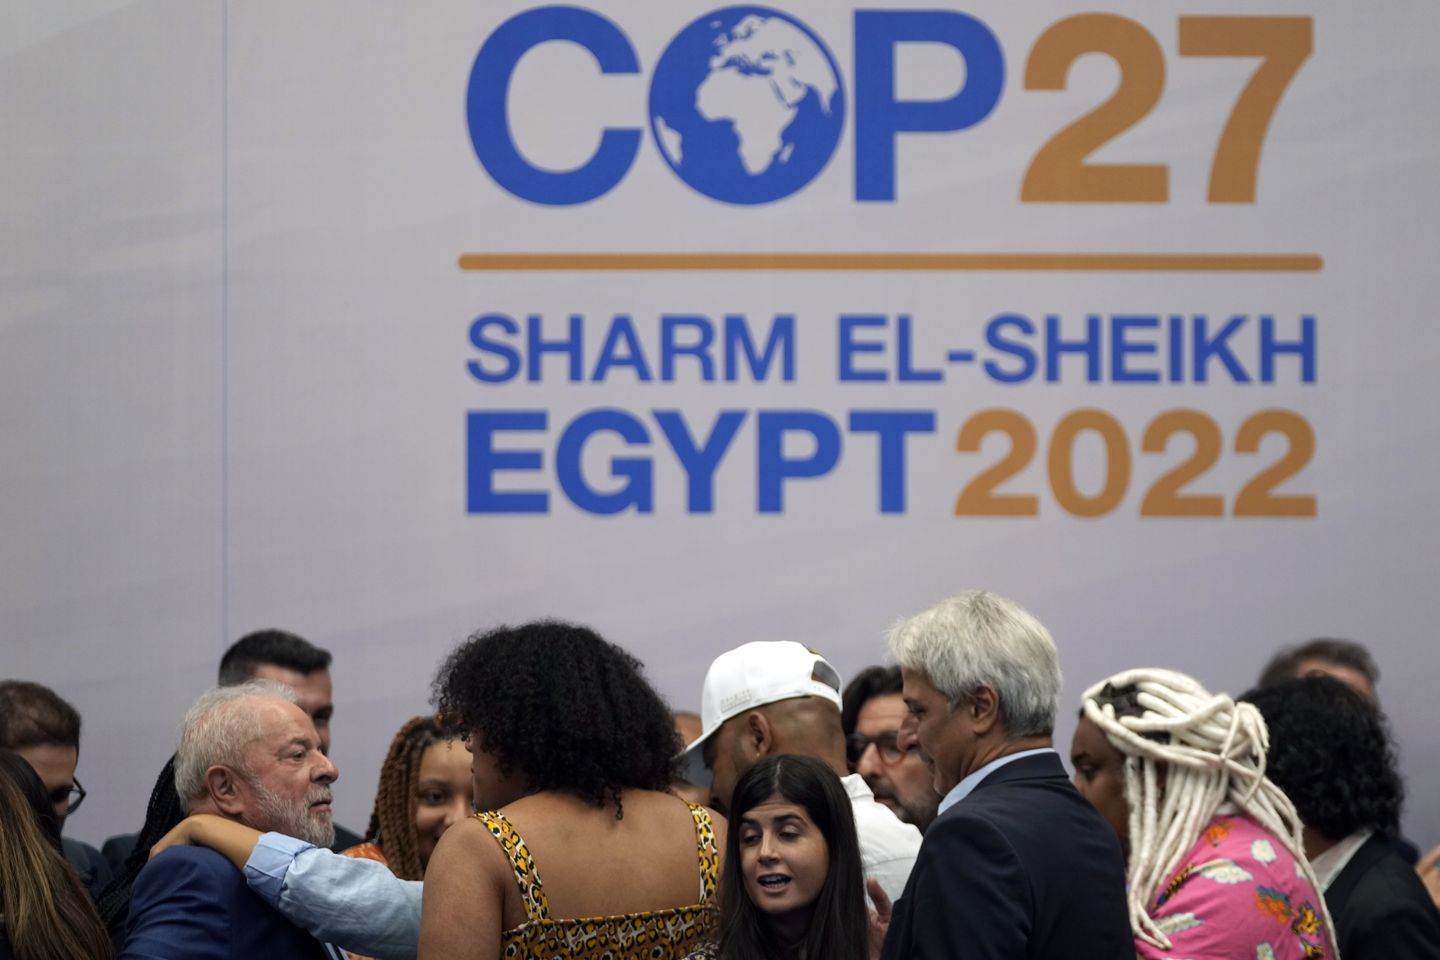 Mısır'daki iklim müzakerecileri bir anlaşmadan uzak olduklarını söylüyor